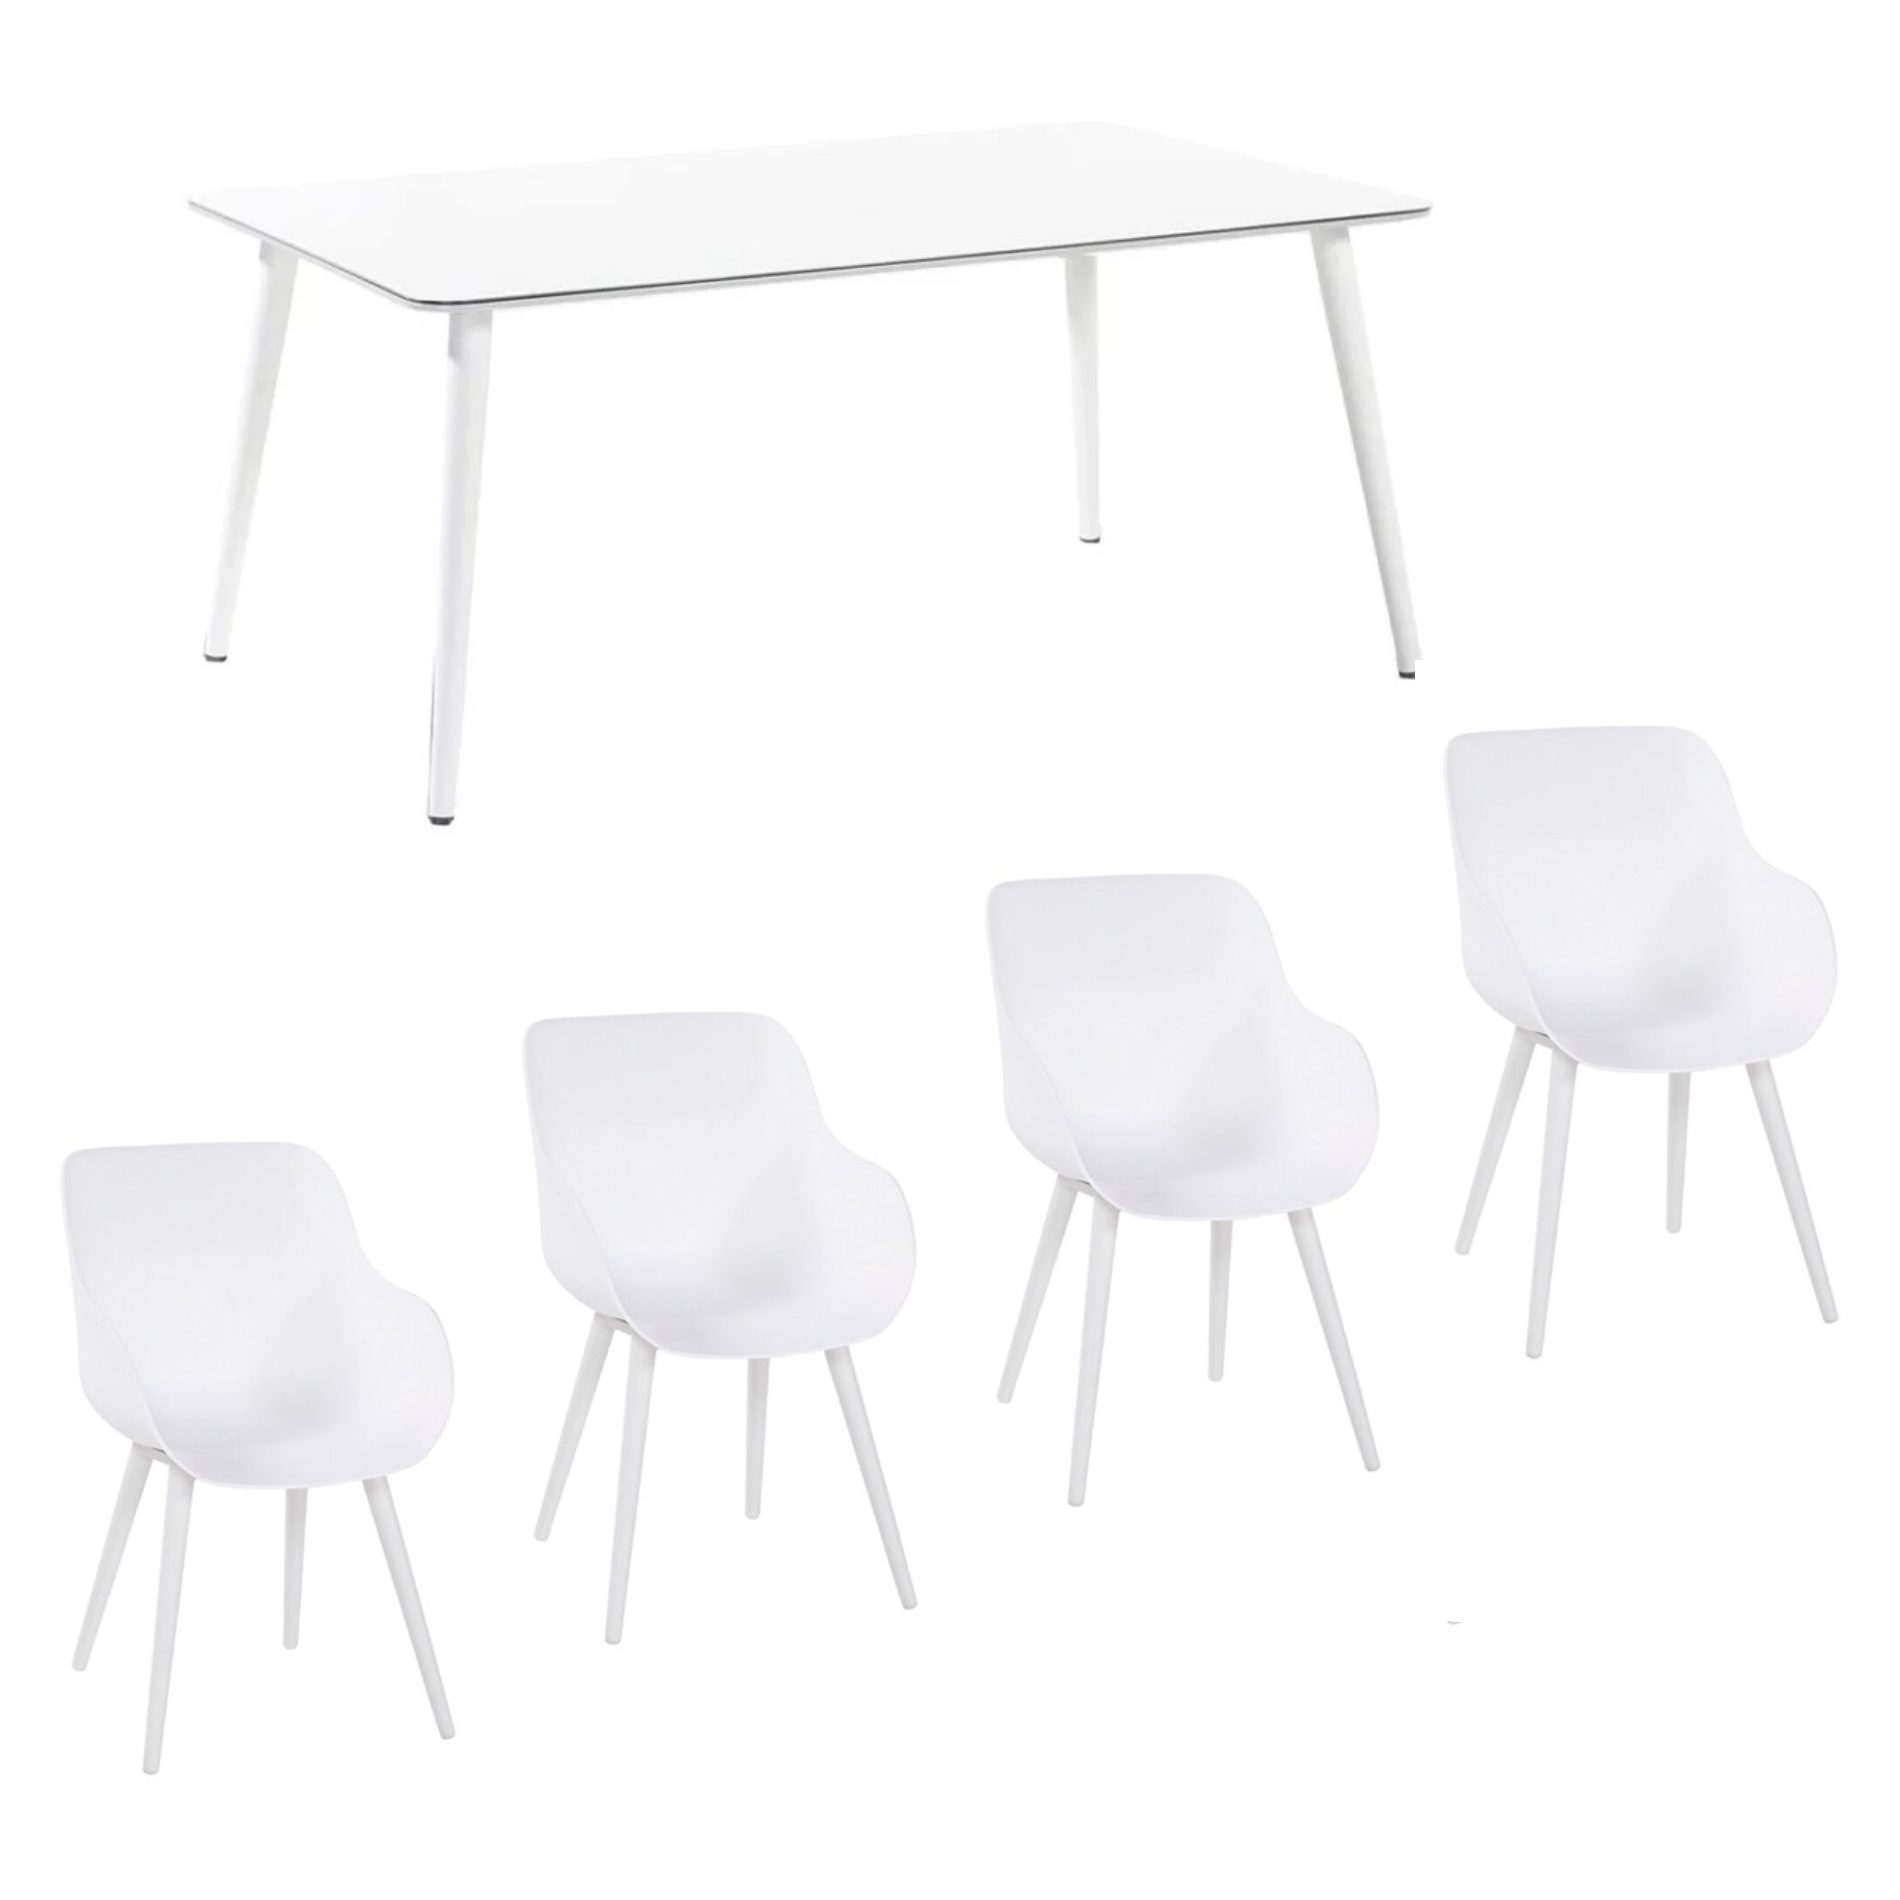 Hartman Gartenmöbel-Set mit Stuhl "Sophie Studio Organic" und Tisch "Studio 170", Aluminium Farbe Weiß